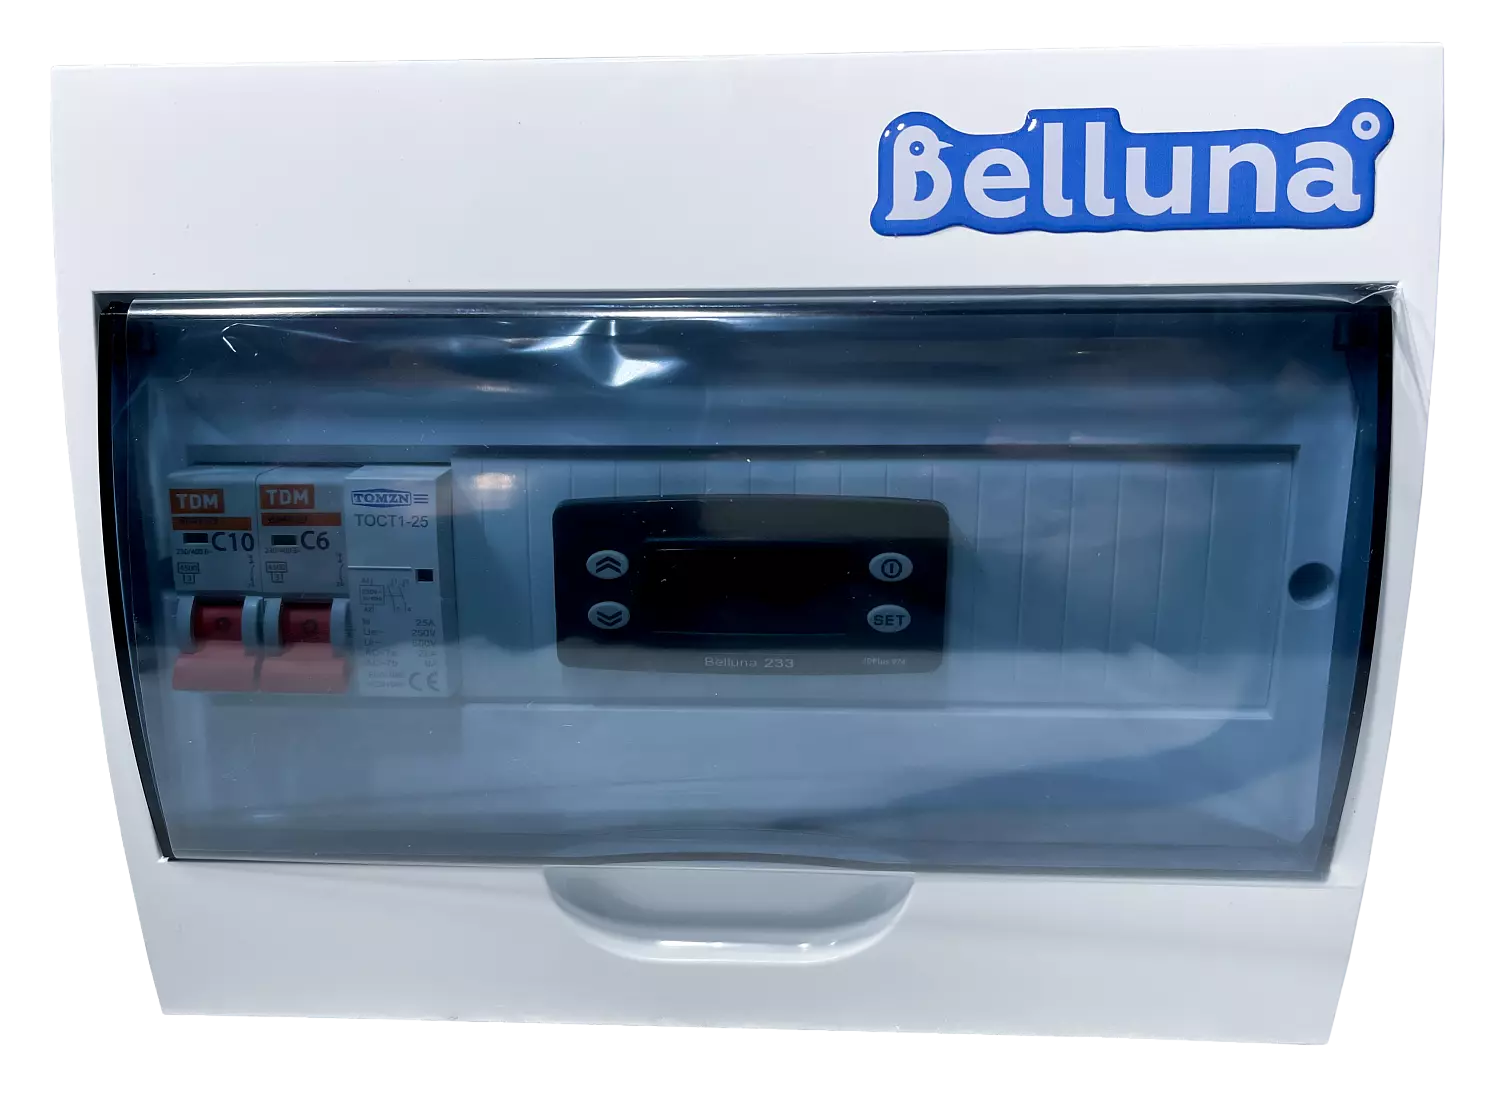 сплит-система Belluna S115 Краснодар